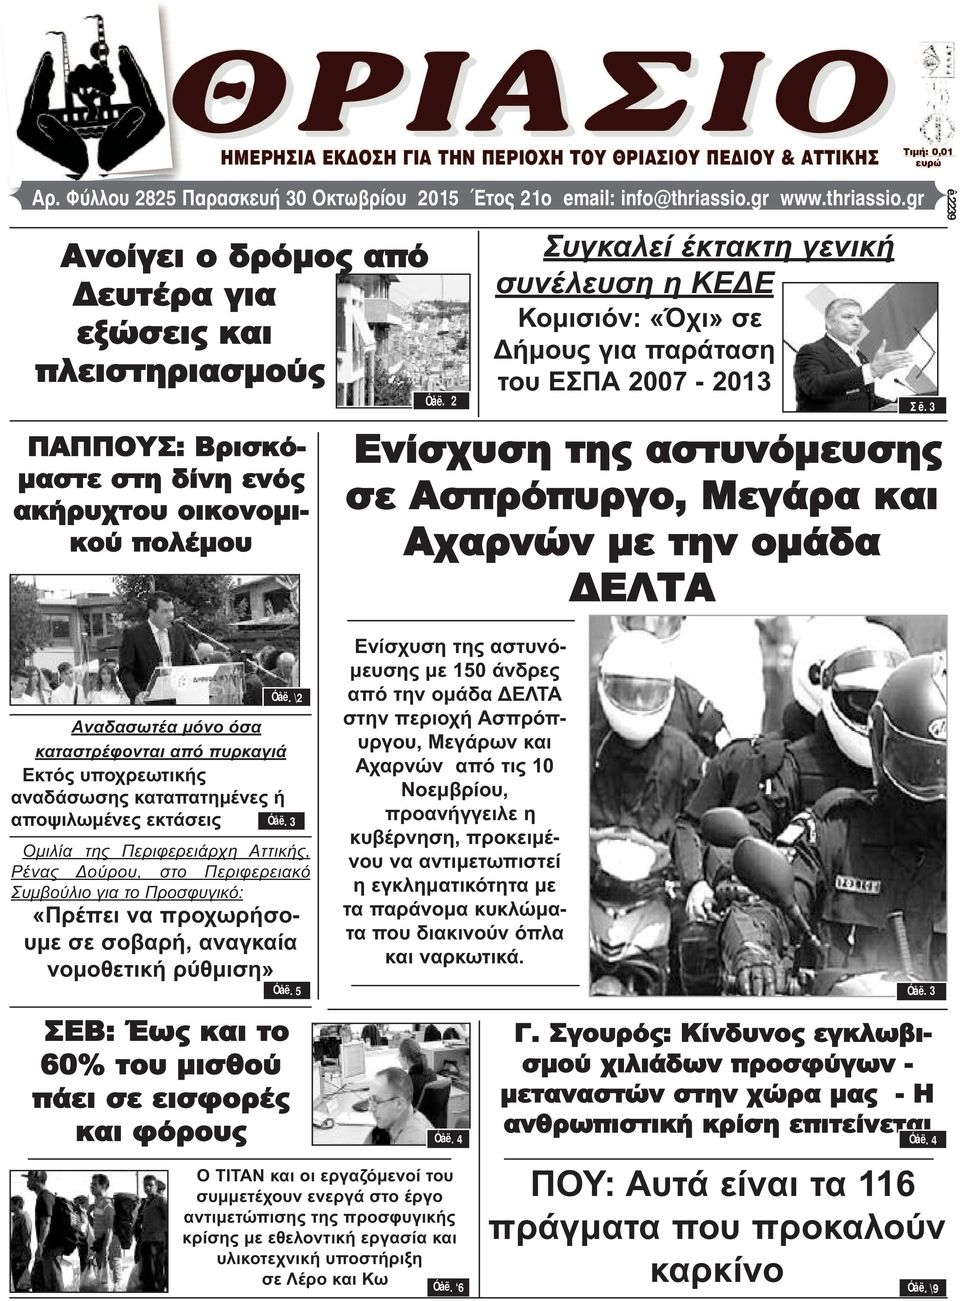 2 Συγκαλεί έκτακτη γενική συνέλευση η ΚΕΔΕ Κομισιόν: «Όχι» σε Δήμους για παράταση του ΕΣΠΑ 2007-2013 Σ ë. 3 Ενίσχυση της αστυνόμευσης σε Ασπρόπυργο, Μεγάρα και Αχαρνών με την ομάδα ΔΕΛΤΑ ê.2239 Óåë.